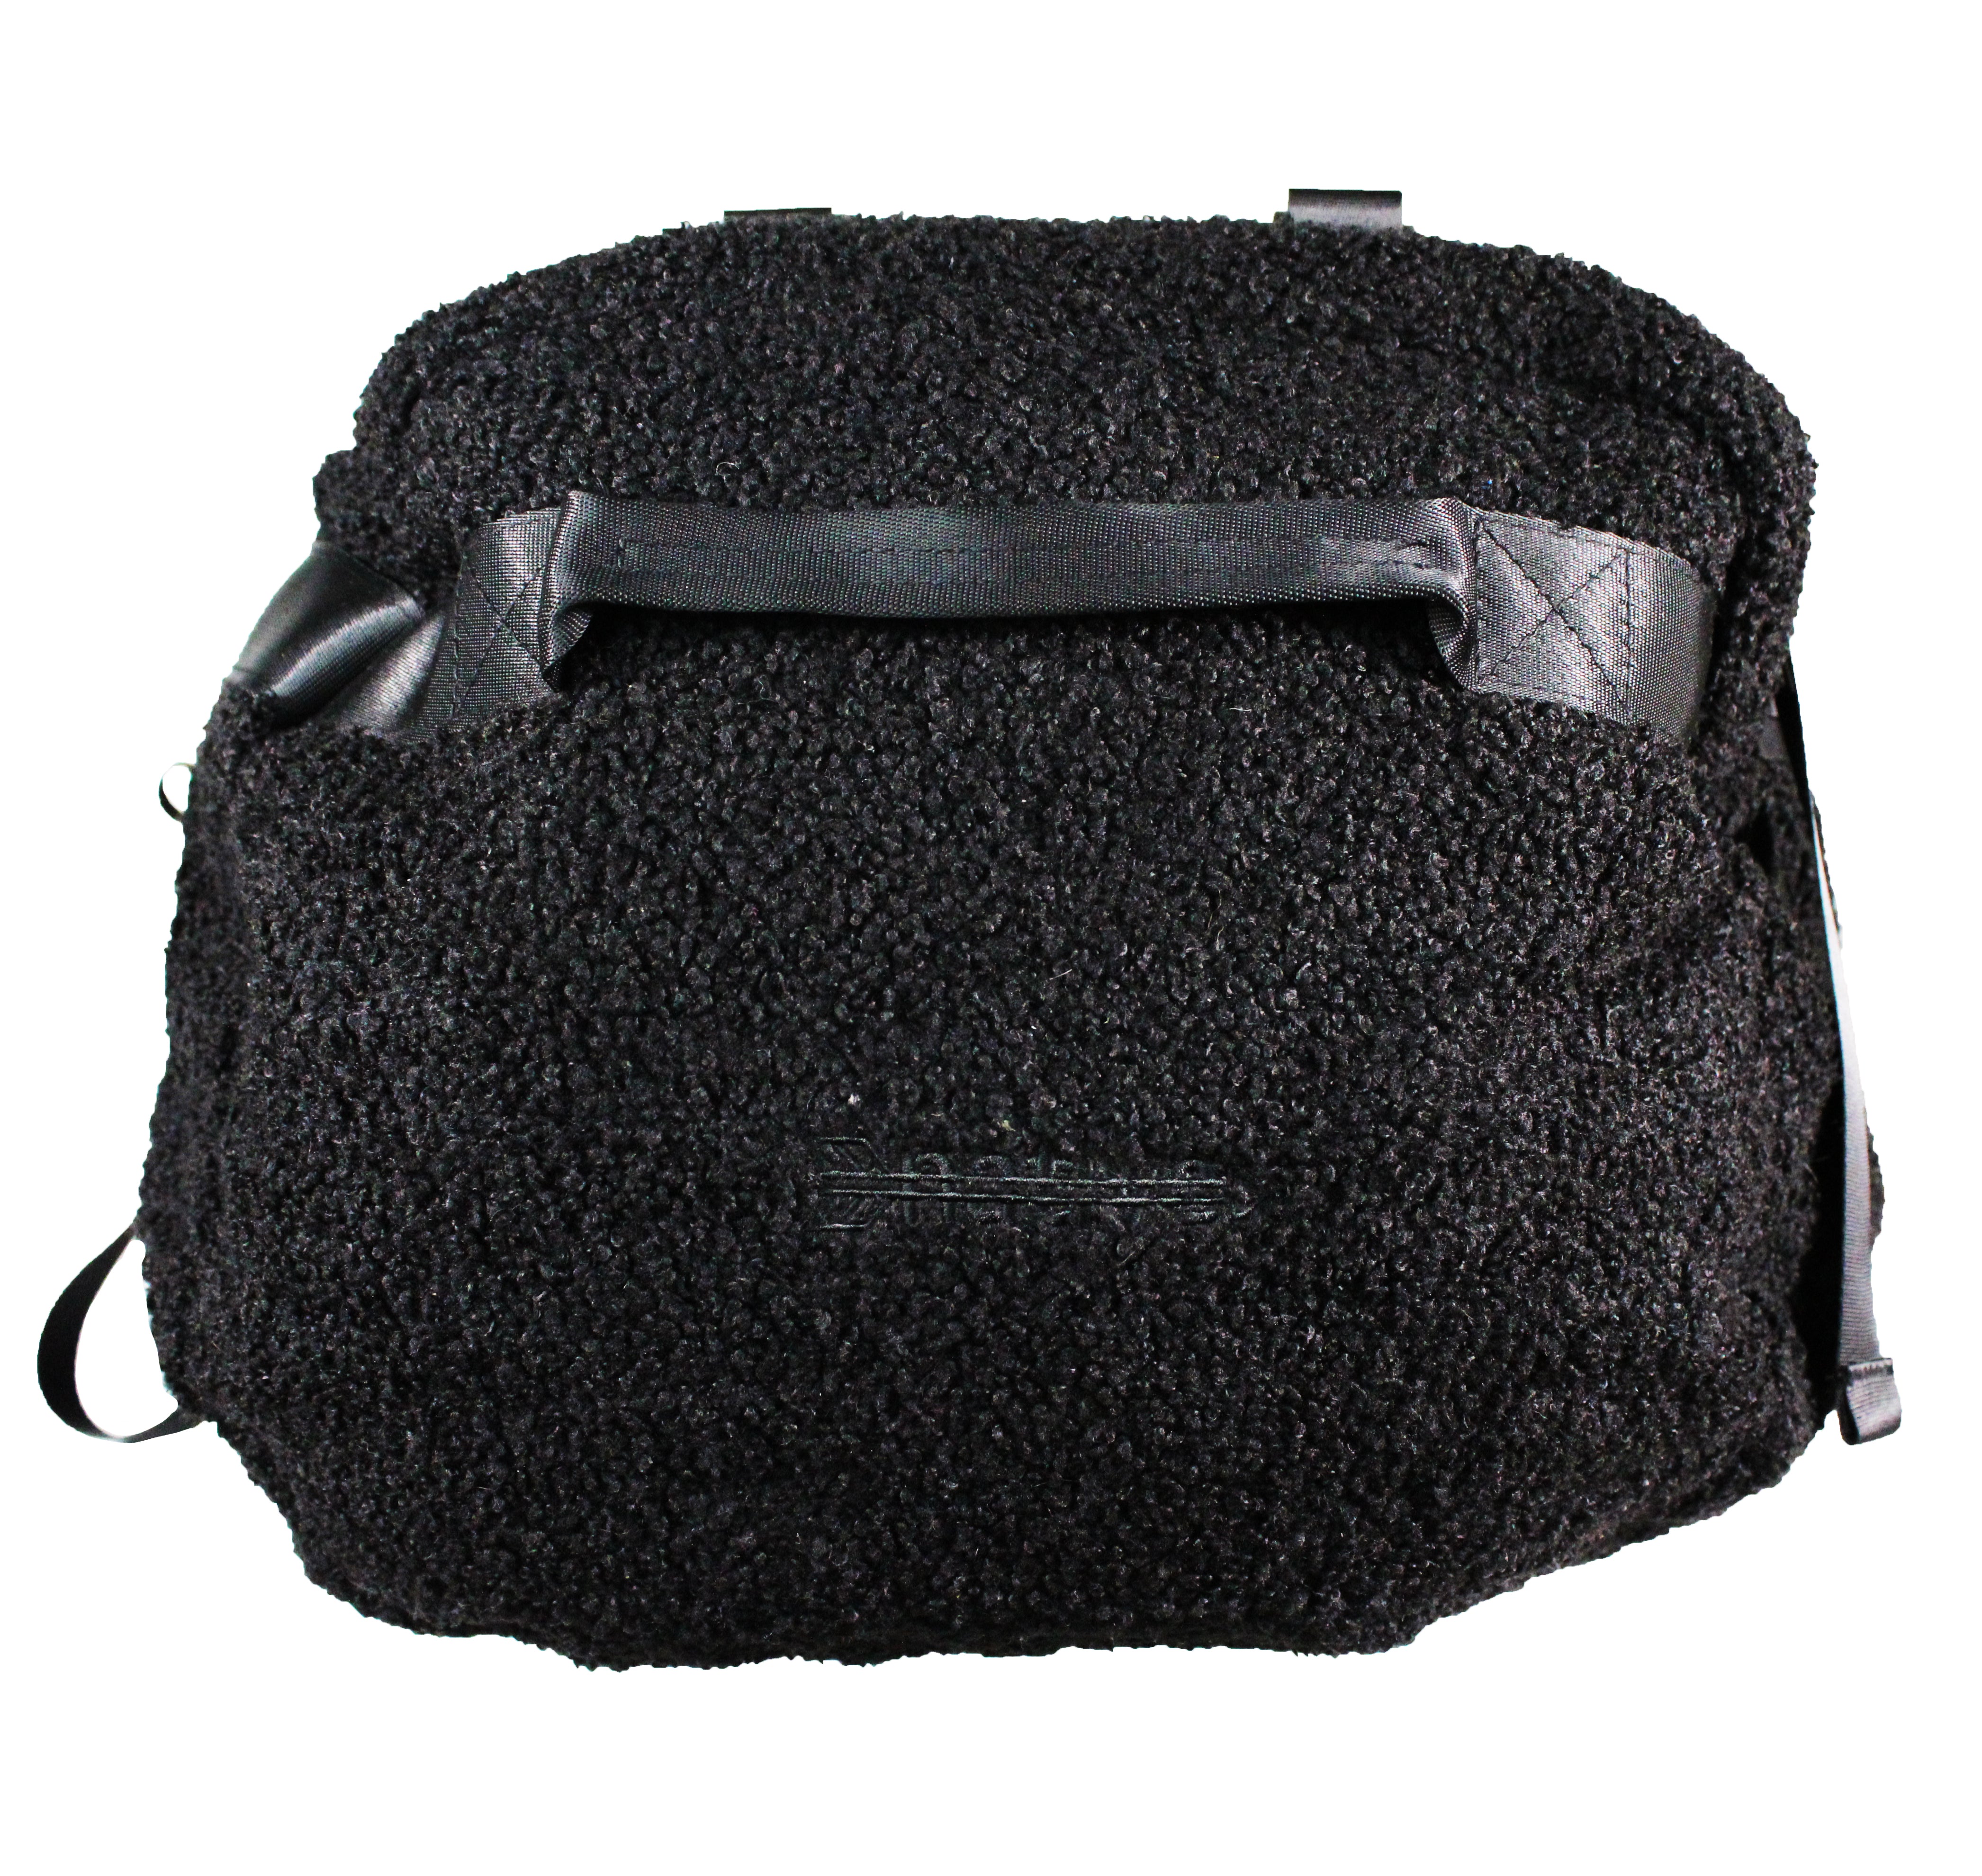 sherpa duffle backpack in black – Native Language Co.